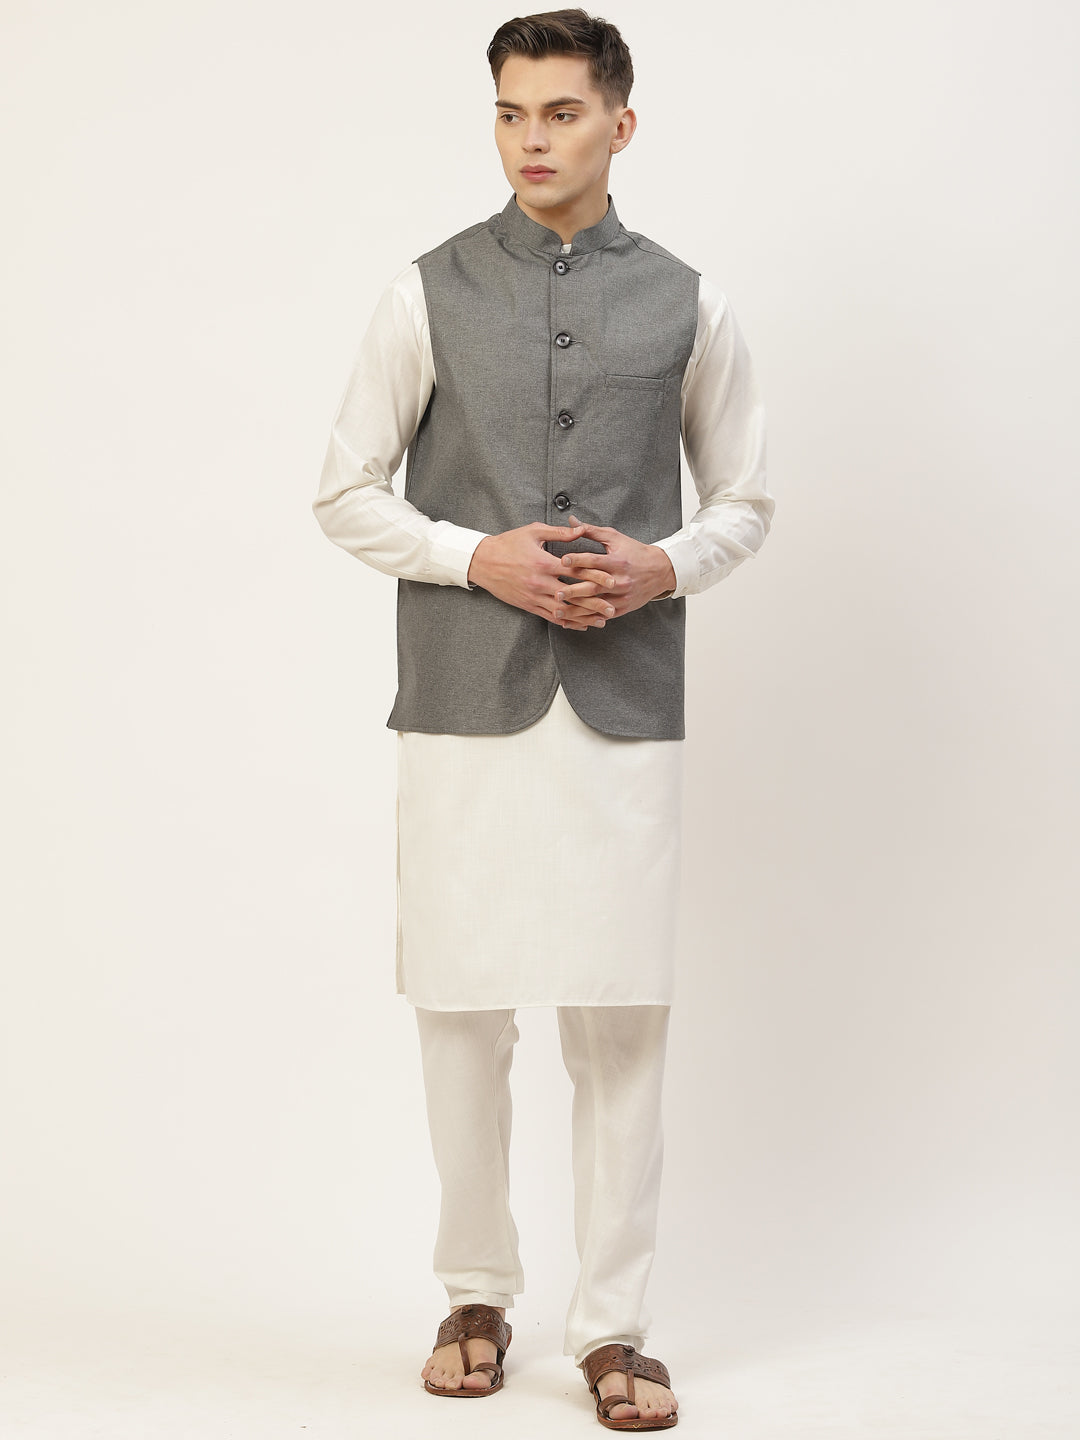 Jompers Men's Charcoal Solid Nehru Jacket